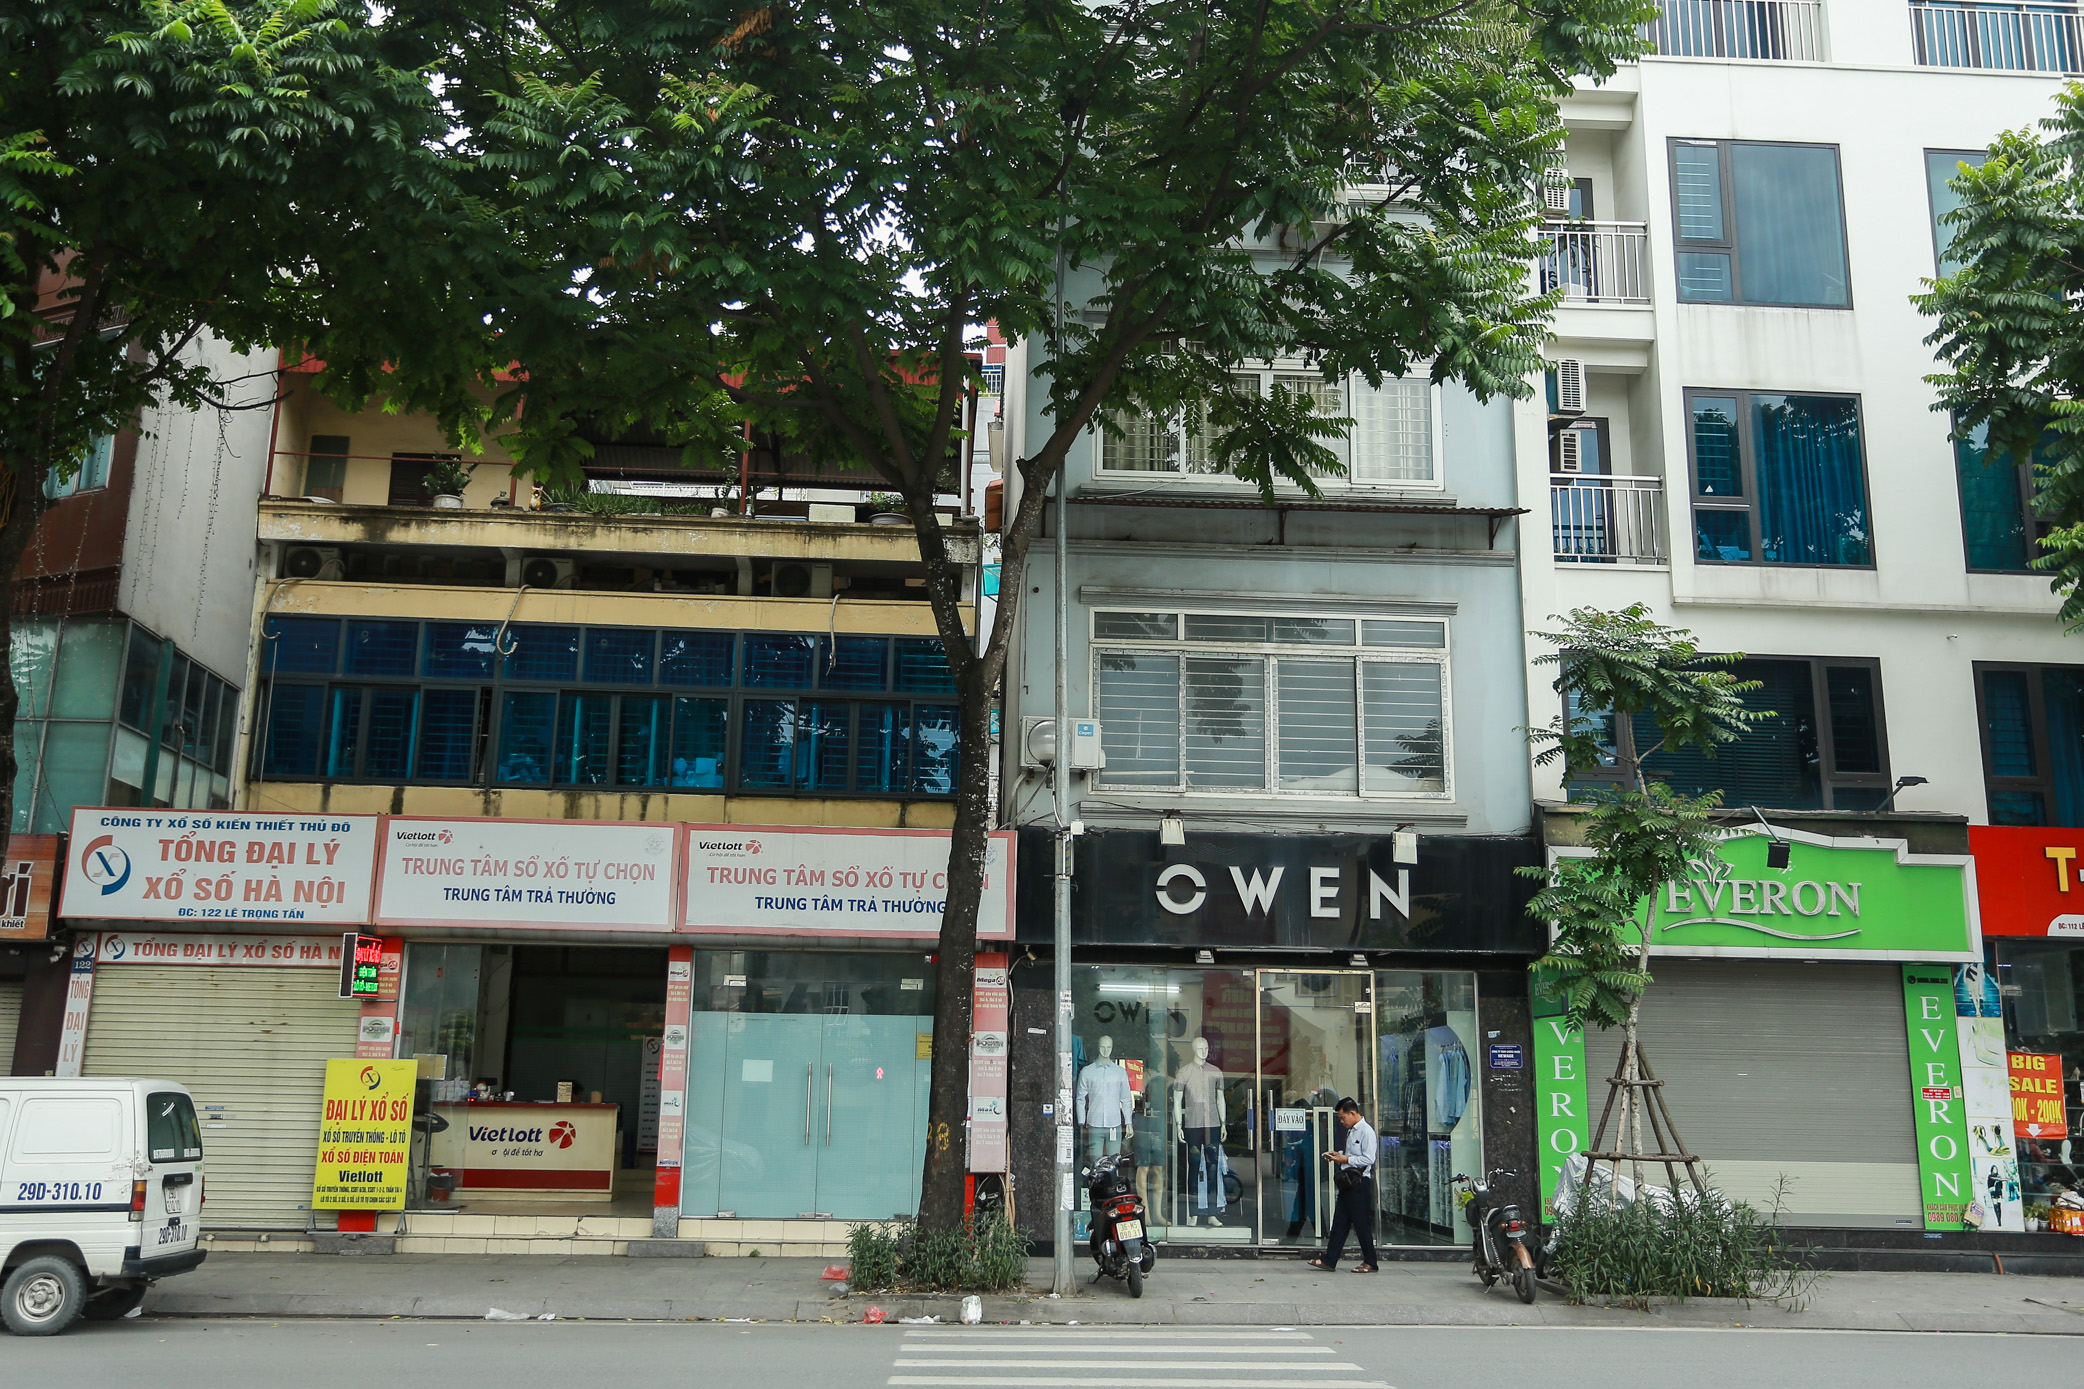 Cảnh tượng nhếch nhác, xuống cấp của 2 tuyến phố kiểu mẫu ở Hà Nội sau 8 năm- Ảnh 9.